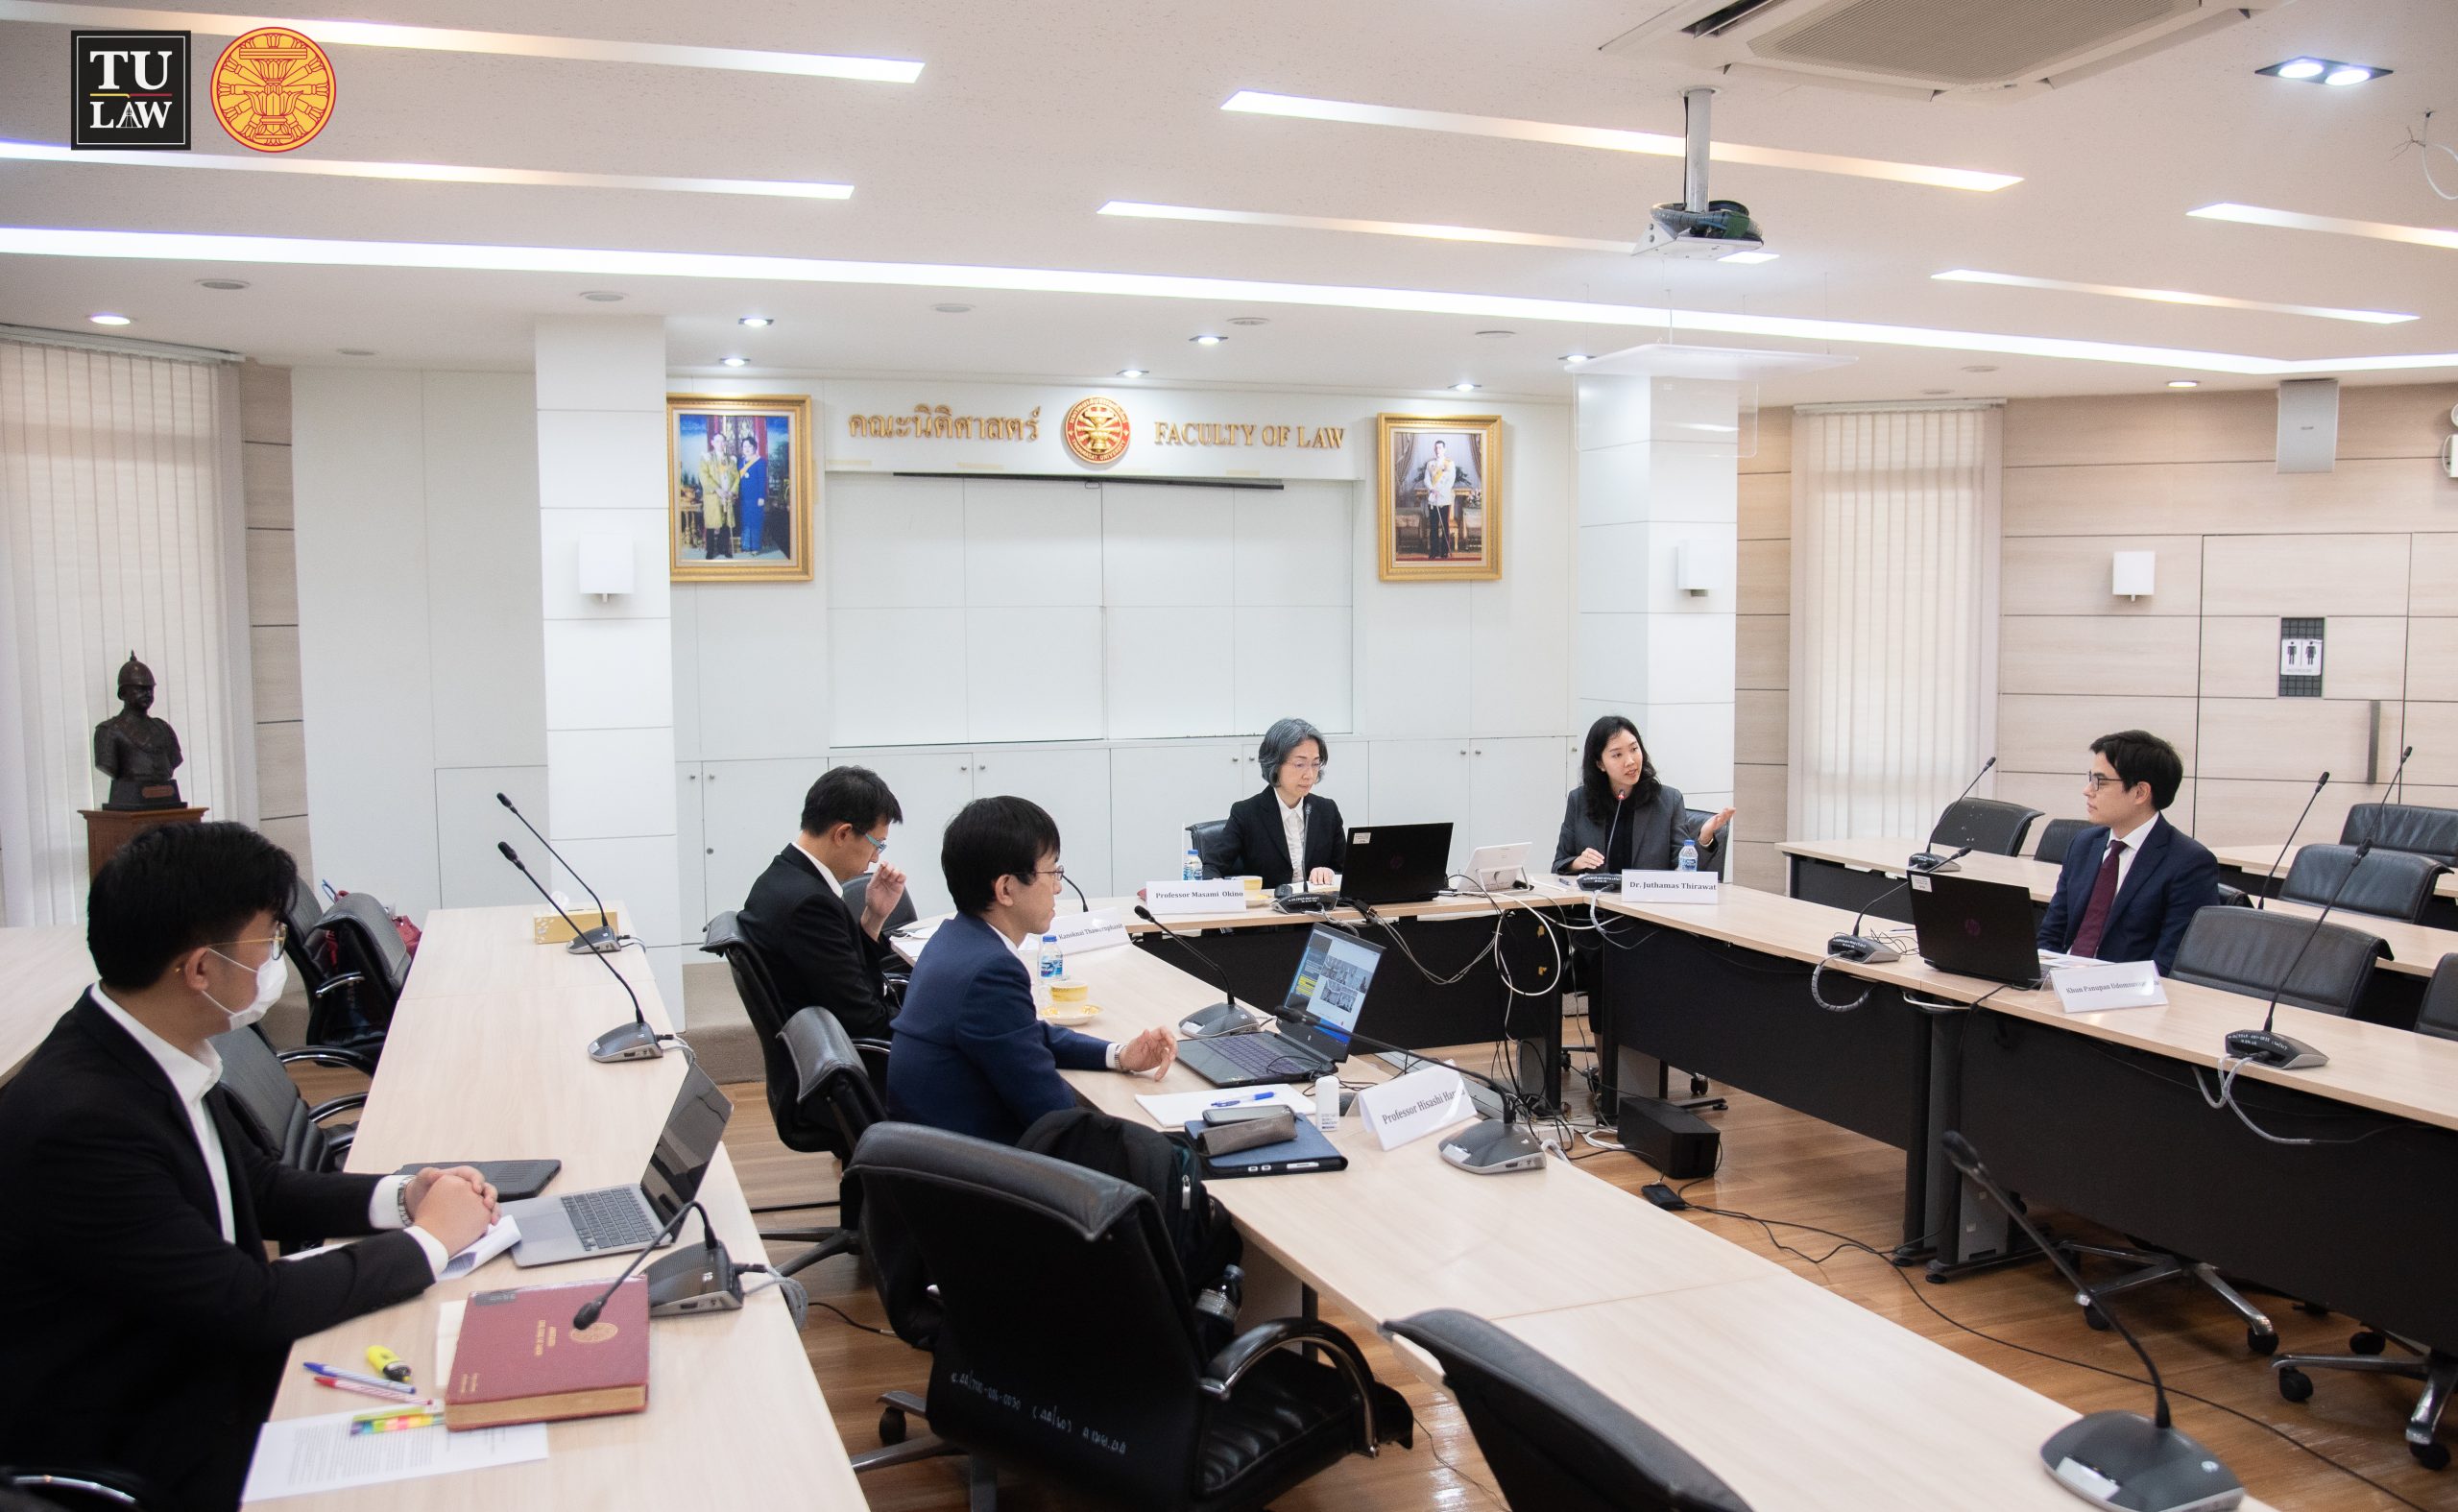 ภาพบรรยากาศงานบรรยายพิเศษ หัวข้อ “International Consumer Protection from Japanese and Thai Perspectives”